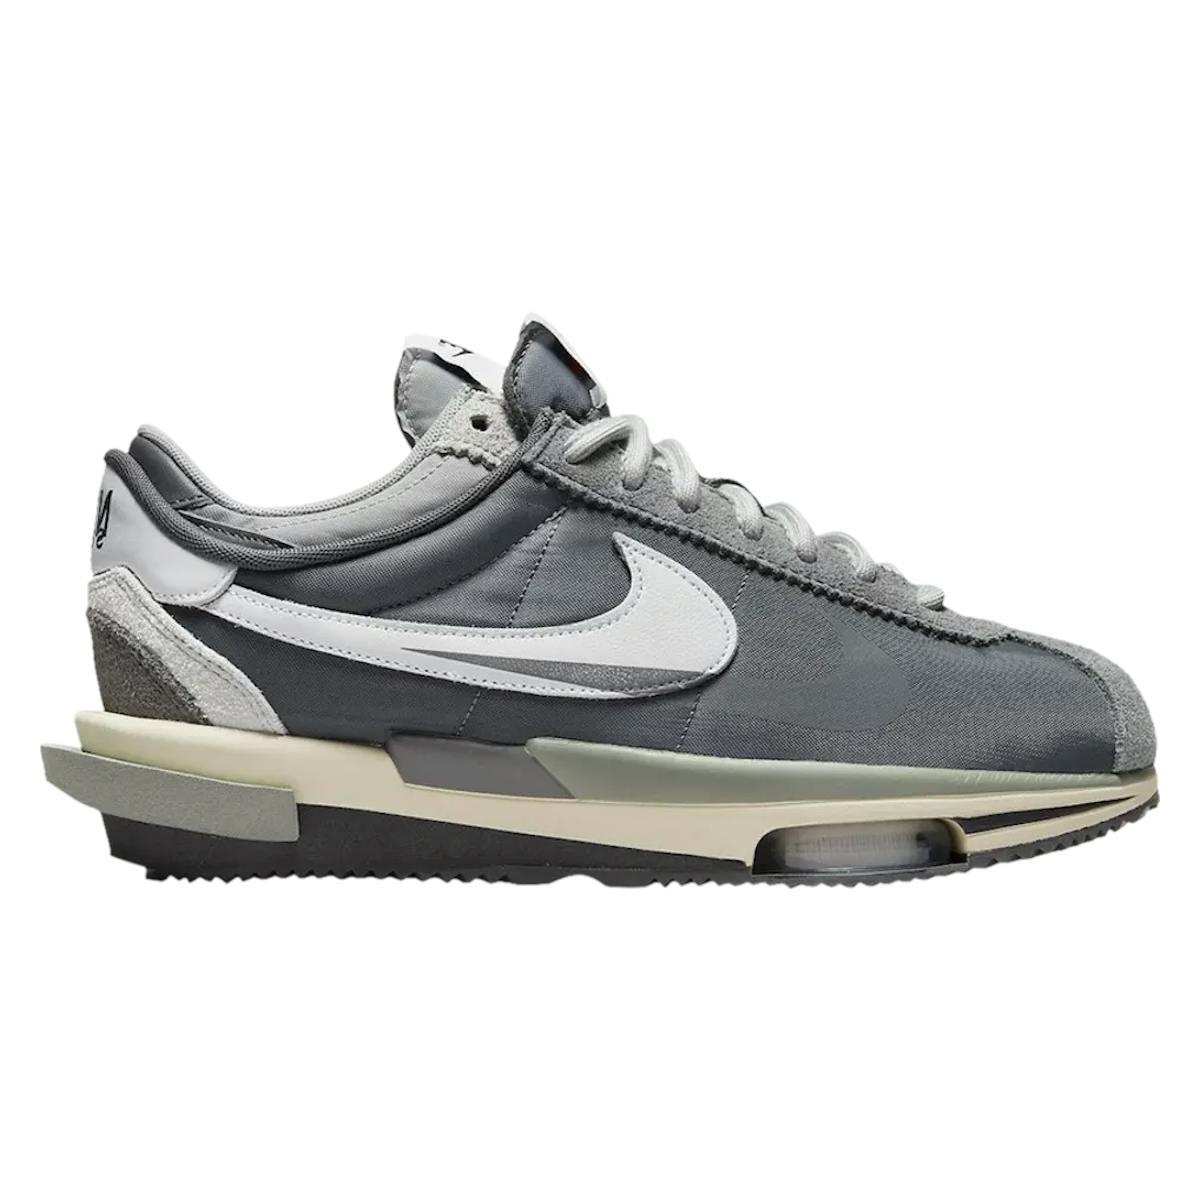 Sacai x Nike Zoom Cortez "Iron Grey"